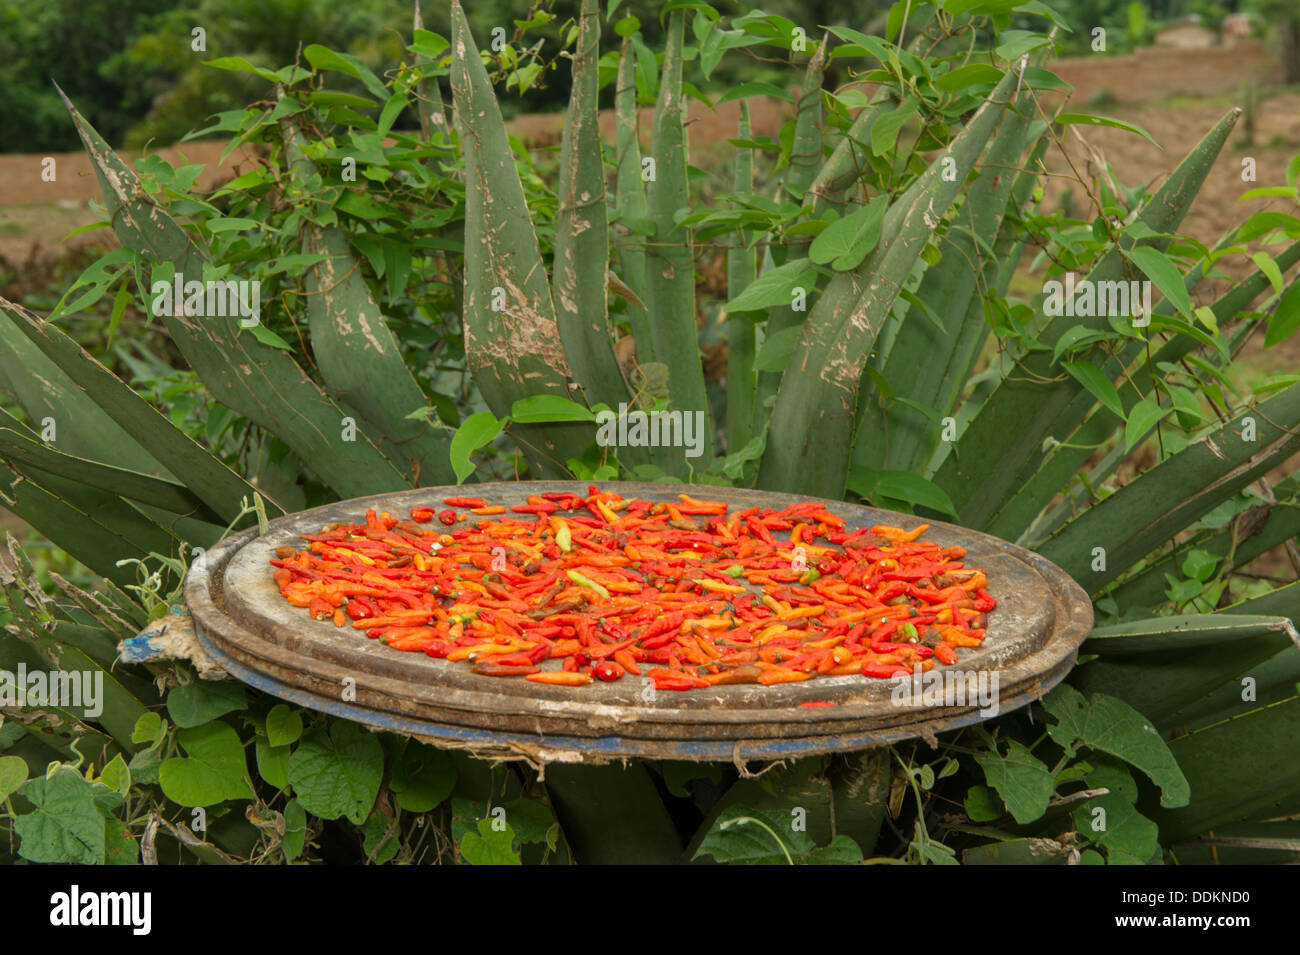 Chili pepper drying, Nigeria Stock Photo